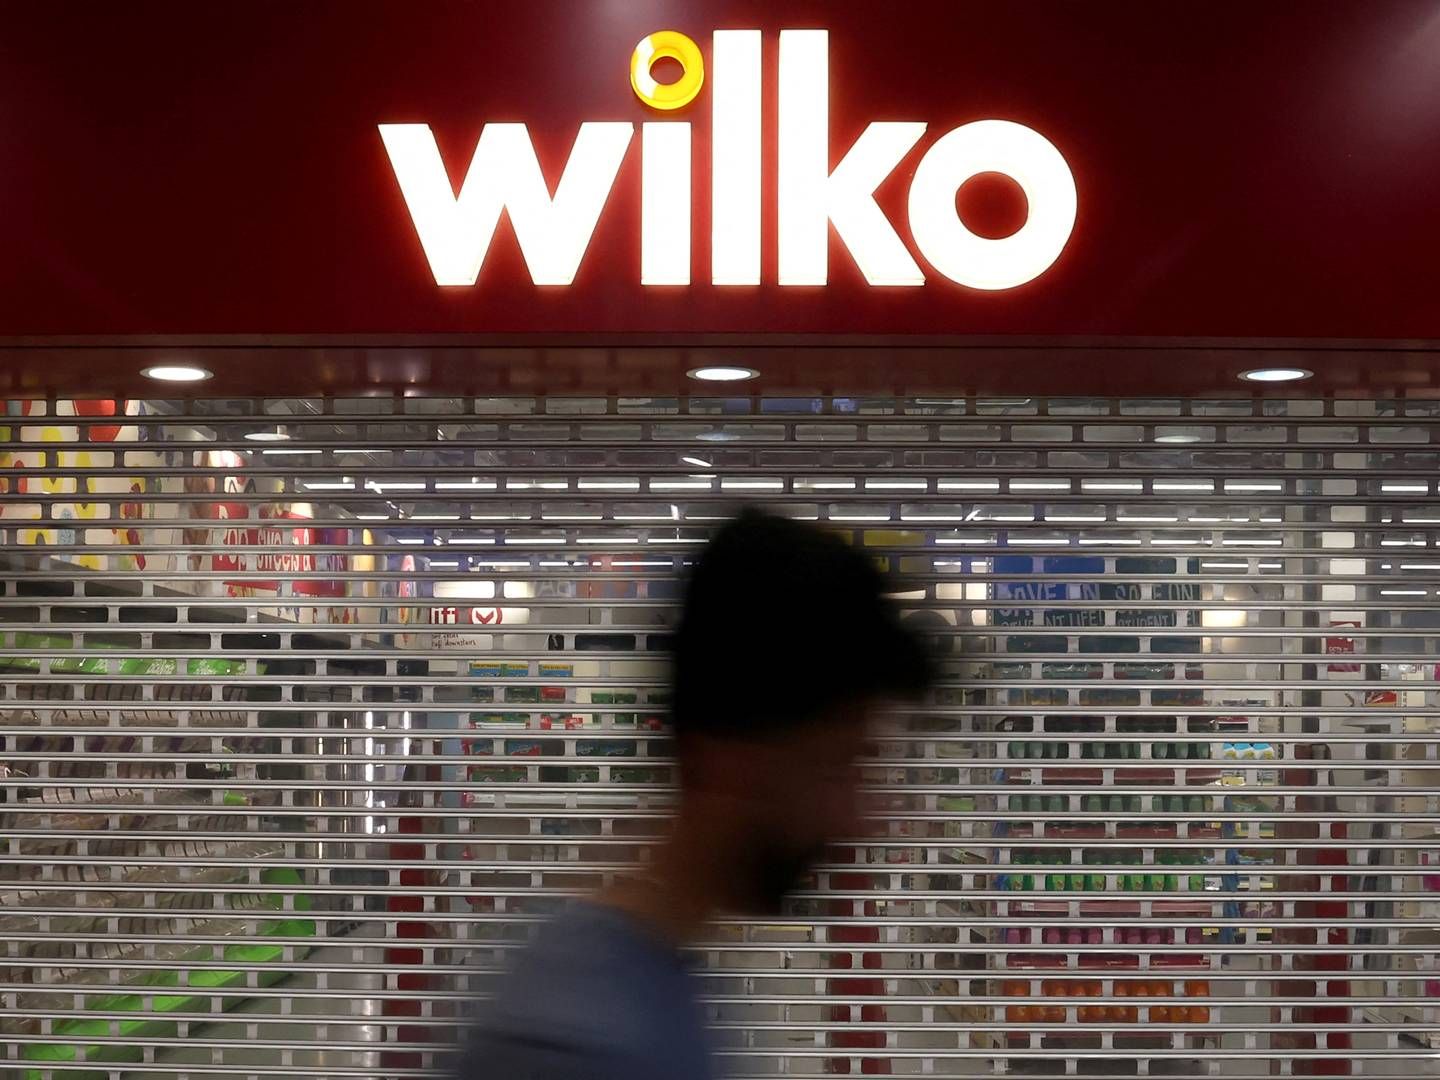 Wilko-kæden, bestående af omkring 400 butikker, har potentielt fået en ny livline. | Foto: Toby Melville